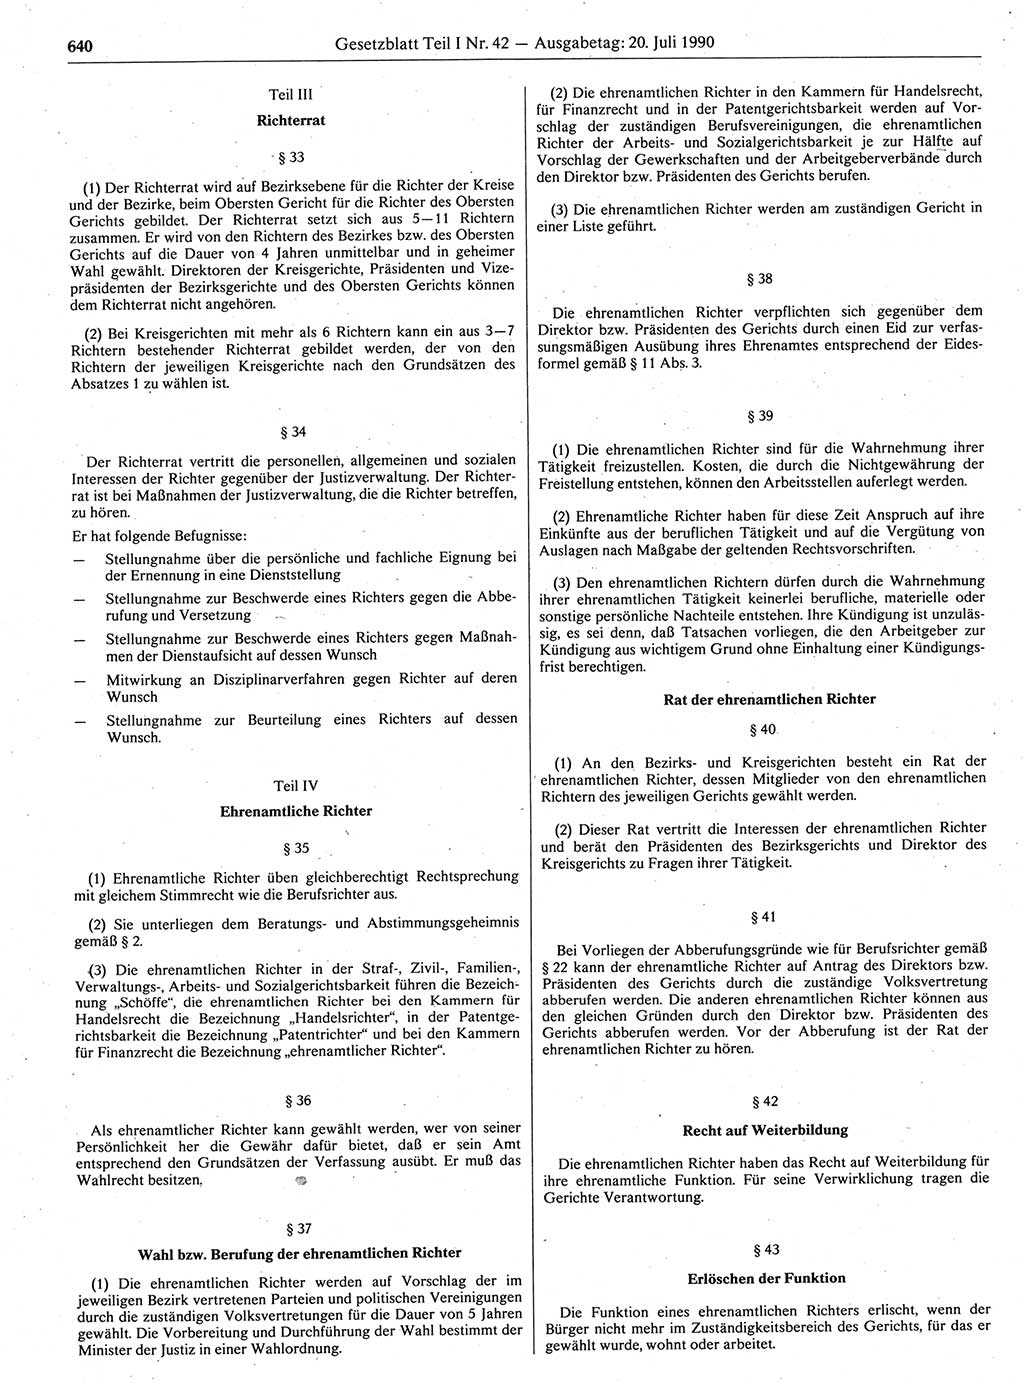 Gesetzblatt (GBl.) der Deutschen Demokratischen Republik (DDR) Teil Ⅰ 1990, Seite 640 (GBl. DDR Ⅰ 1990, S. 640)